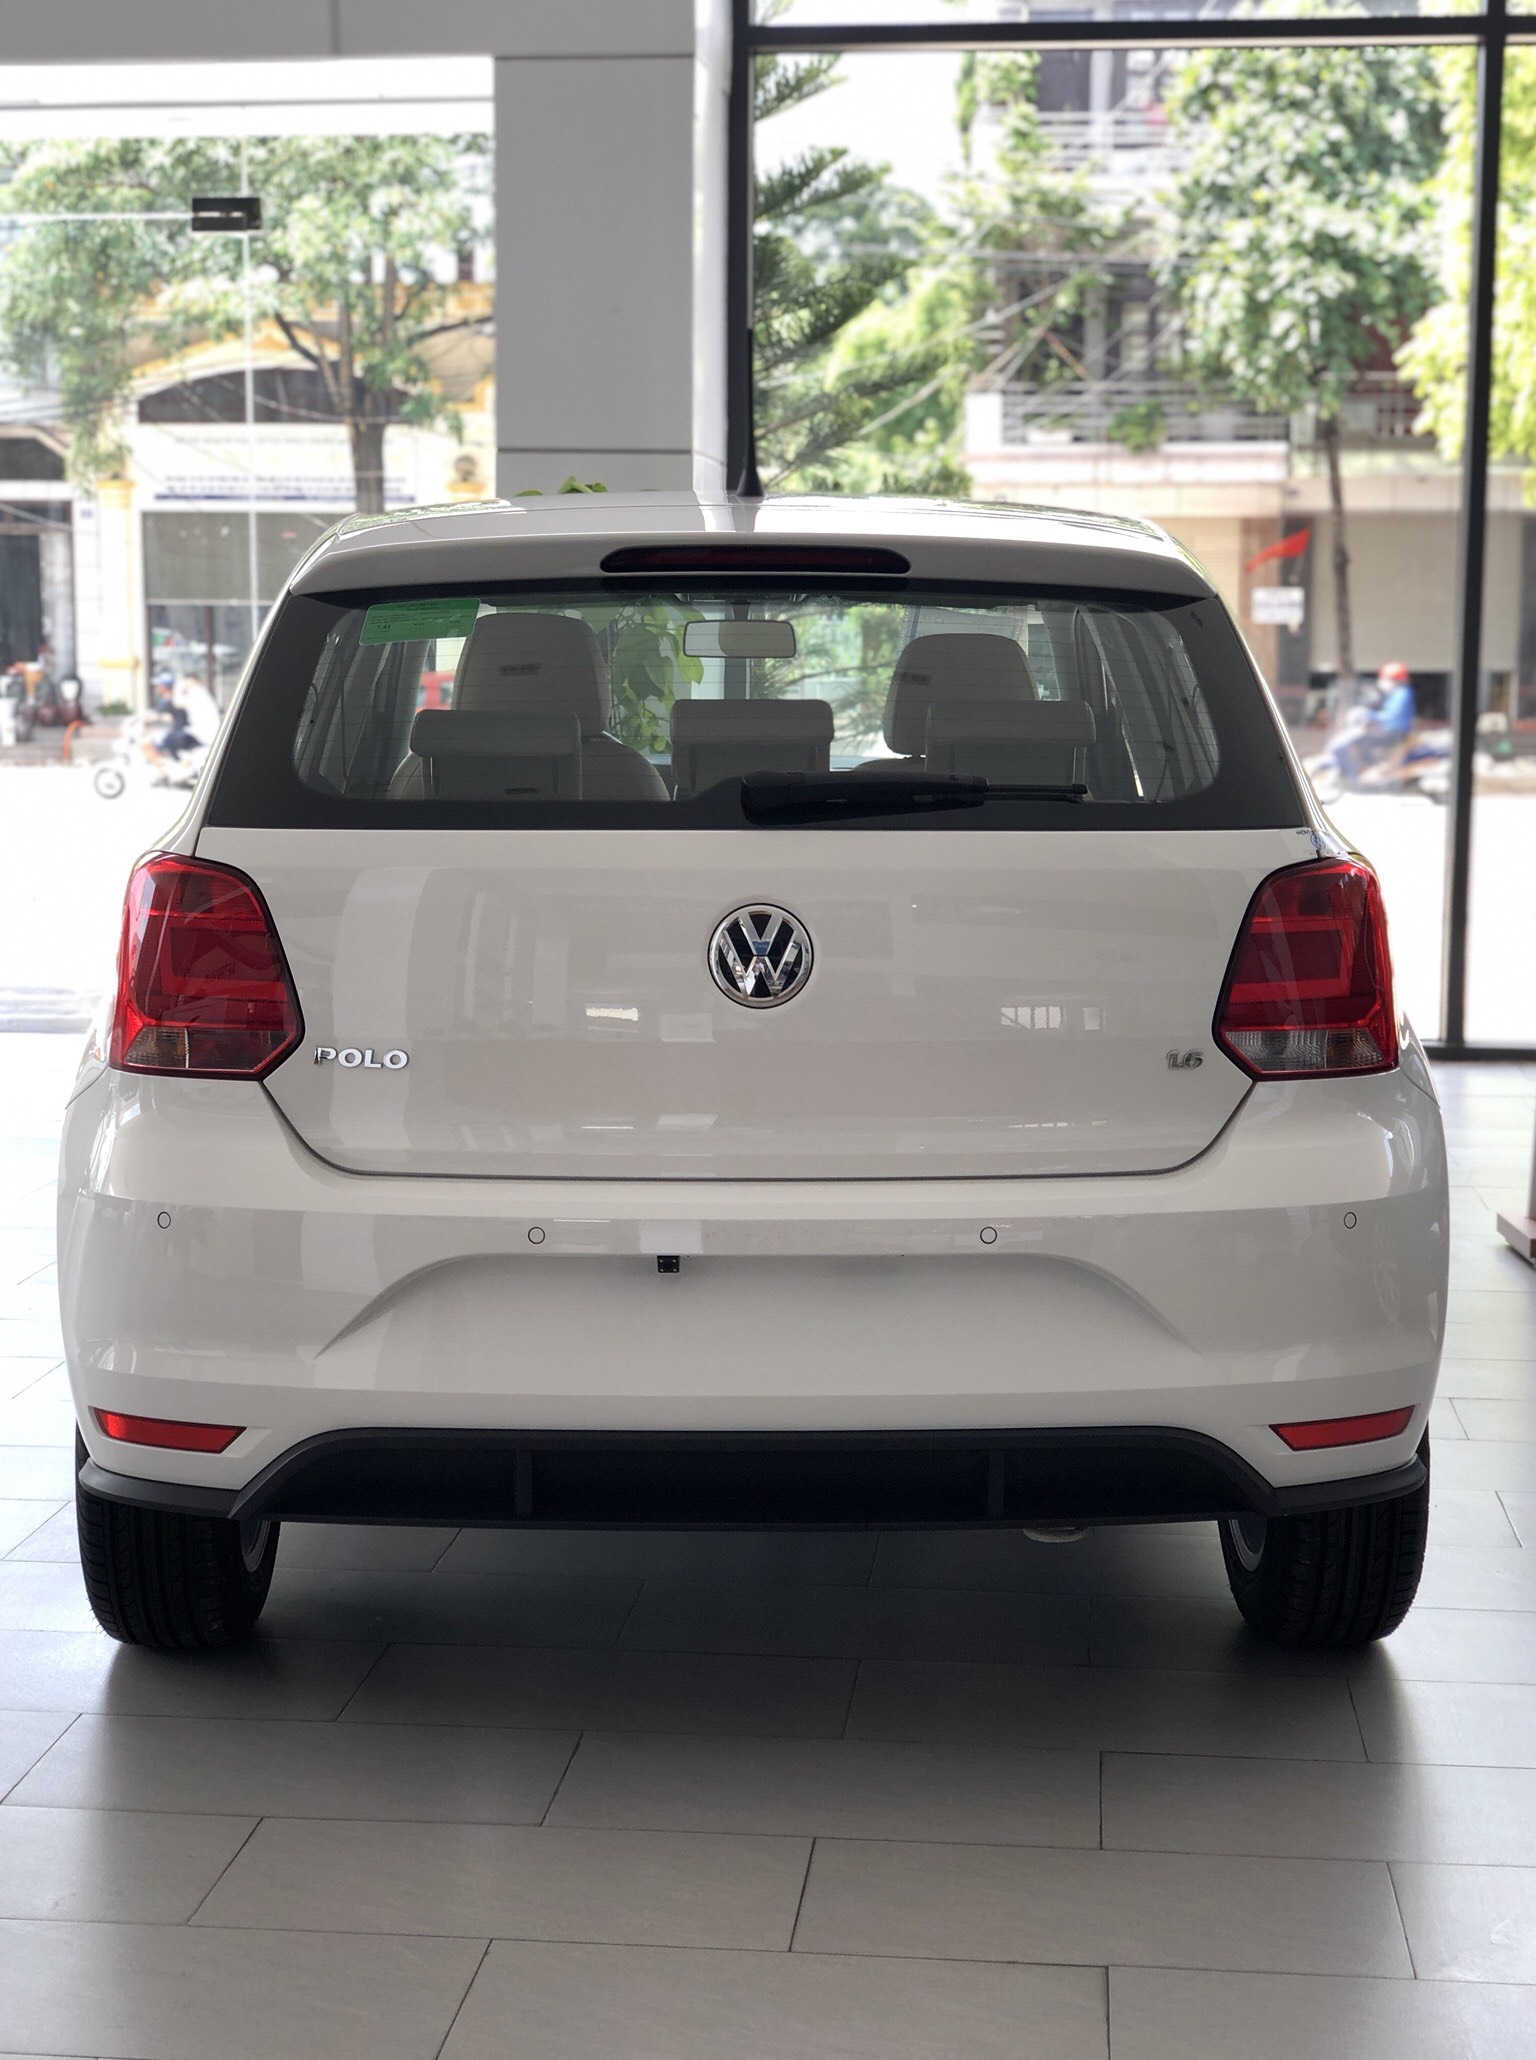 Volkswagen Polo Hatchback 2020, màu trắng tặng quà hấp dẫn khi mua xe-9